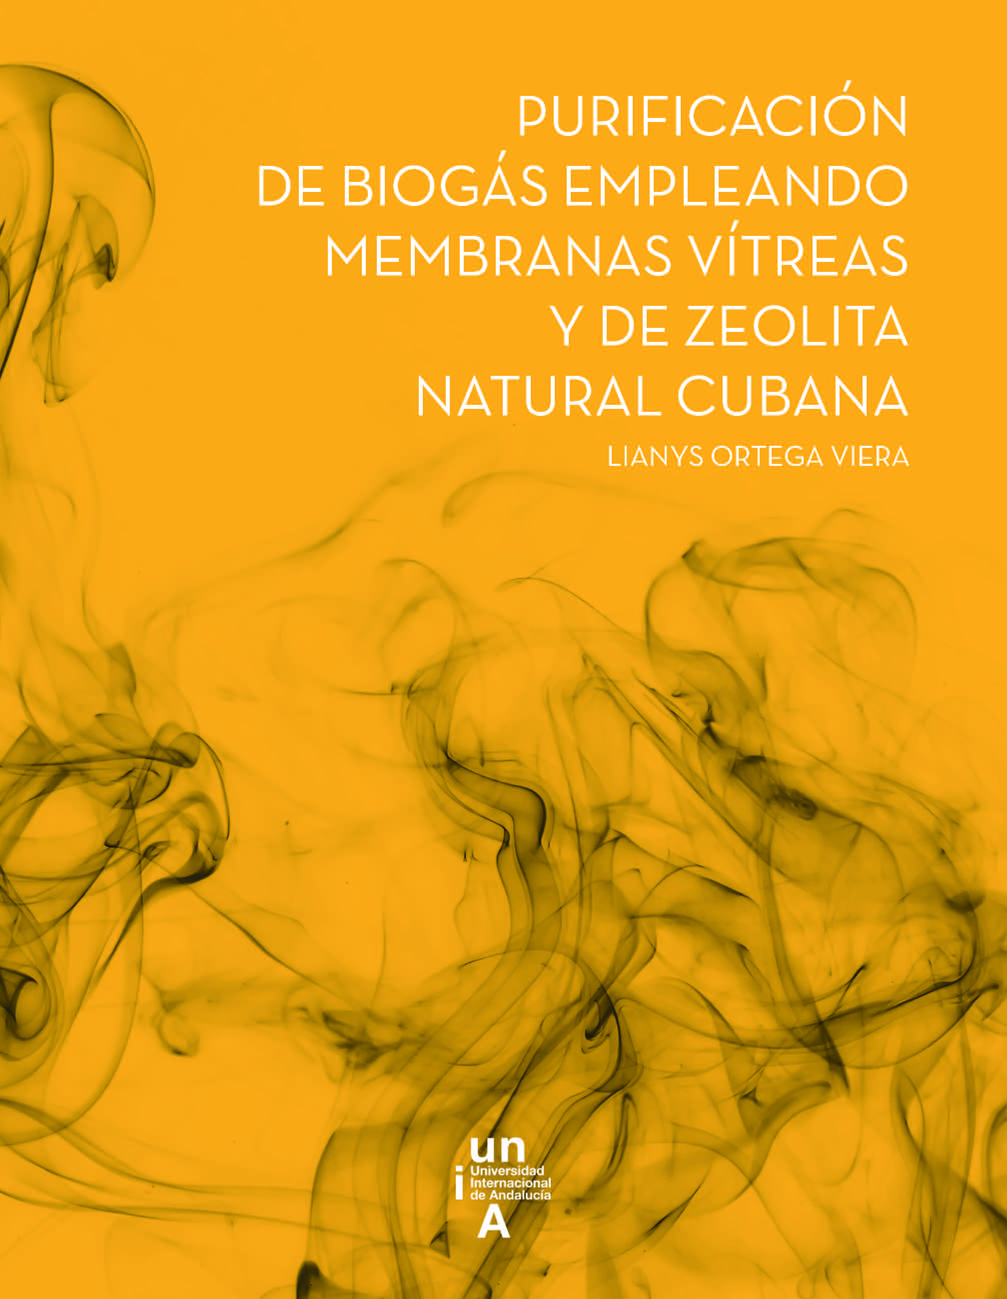 Purificación de biogás empleando membranas vítreas y de zeolita natural cubana